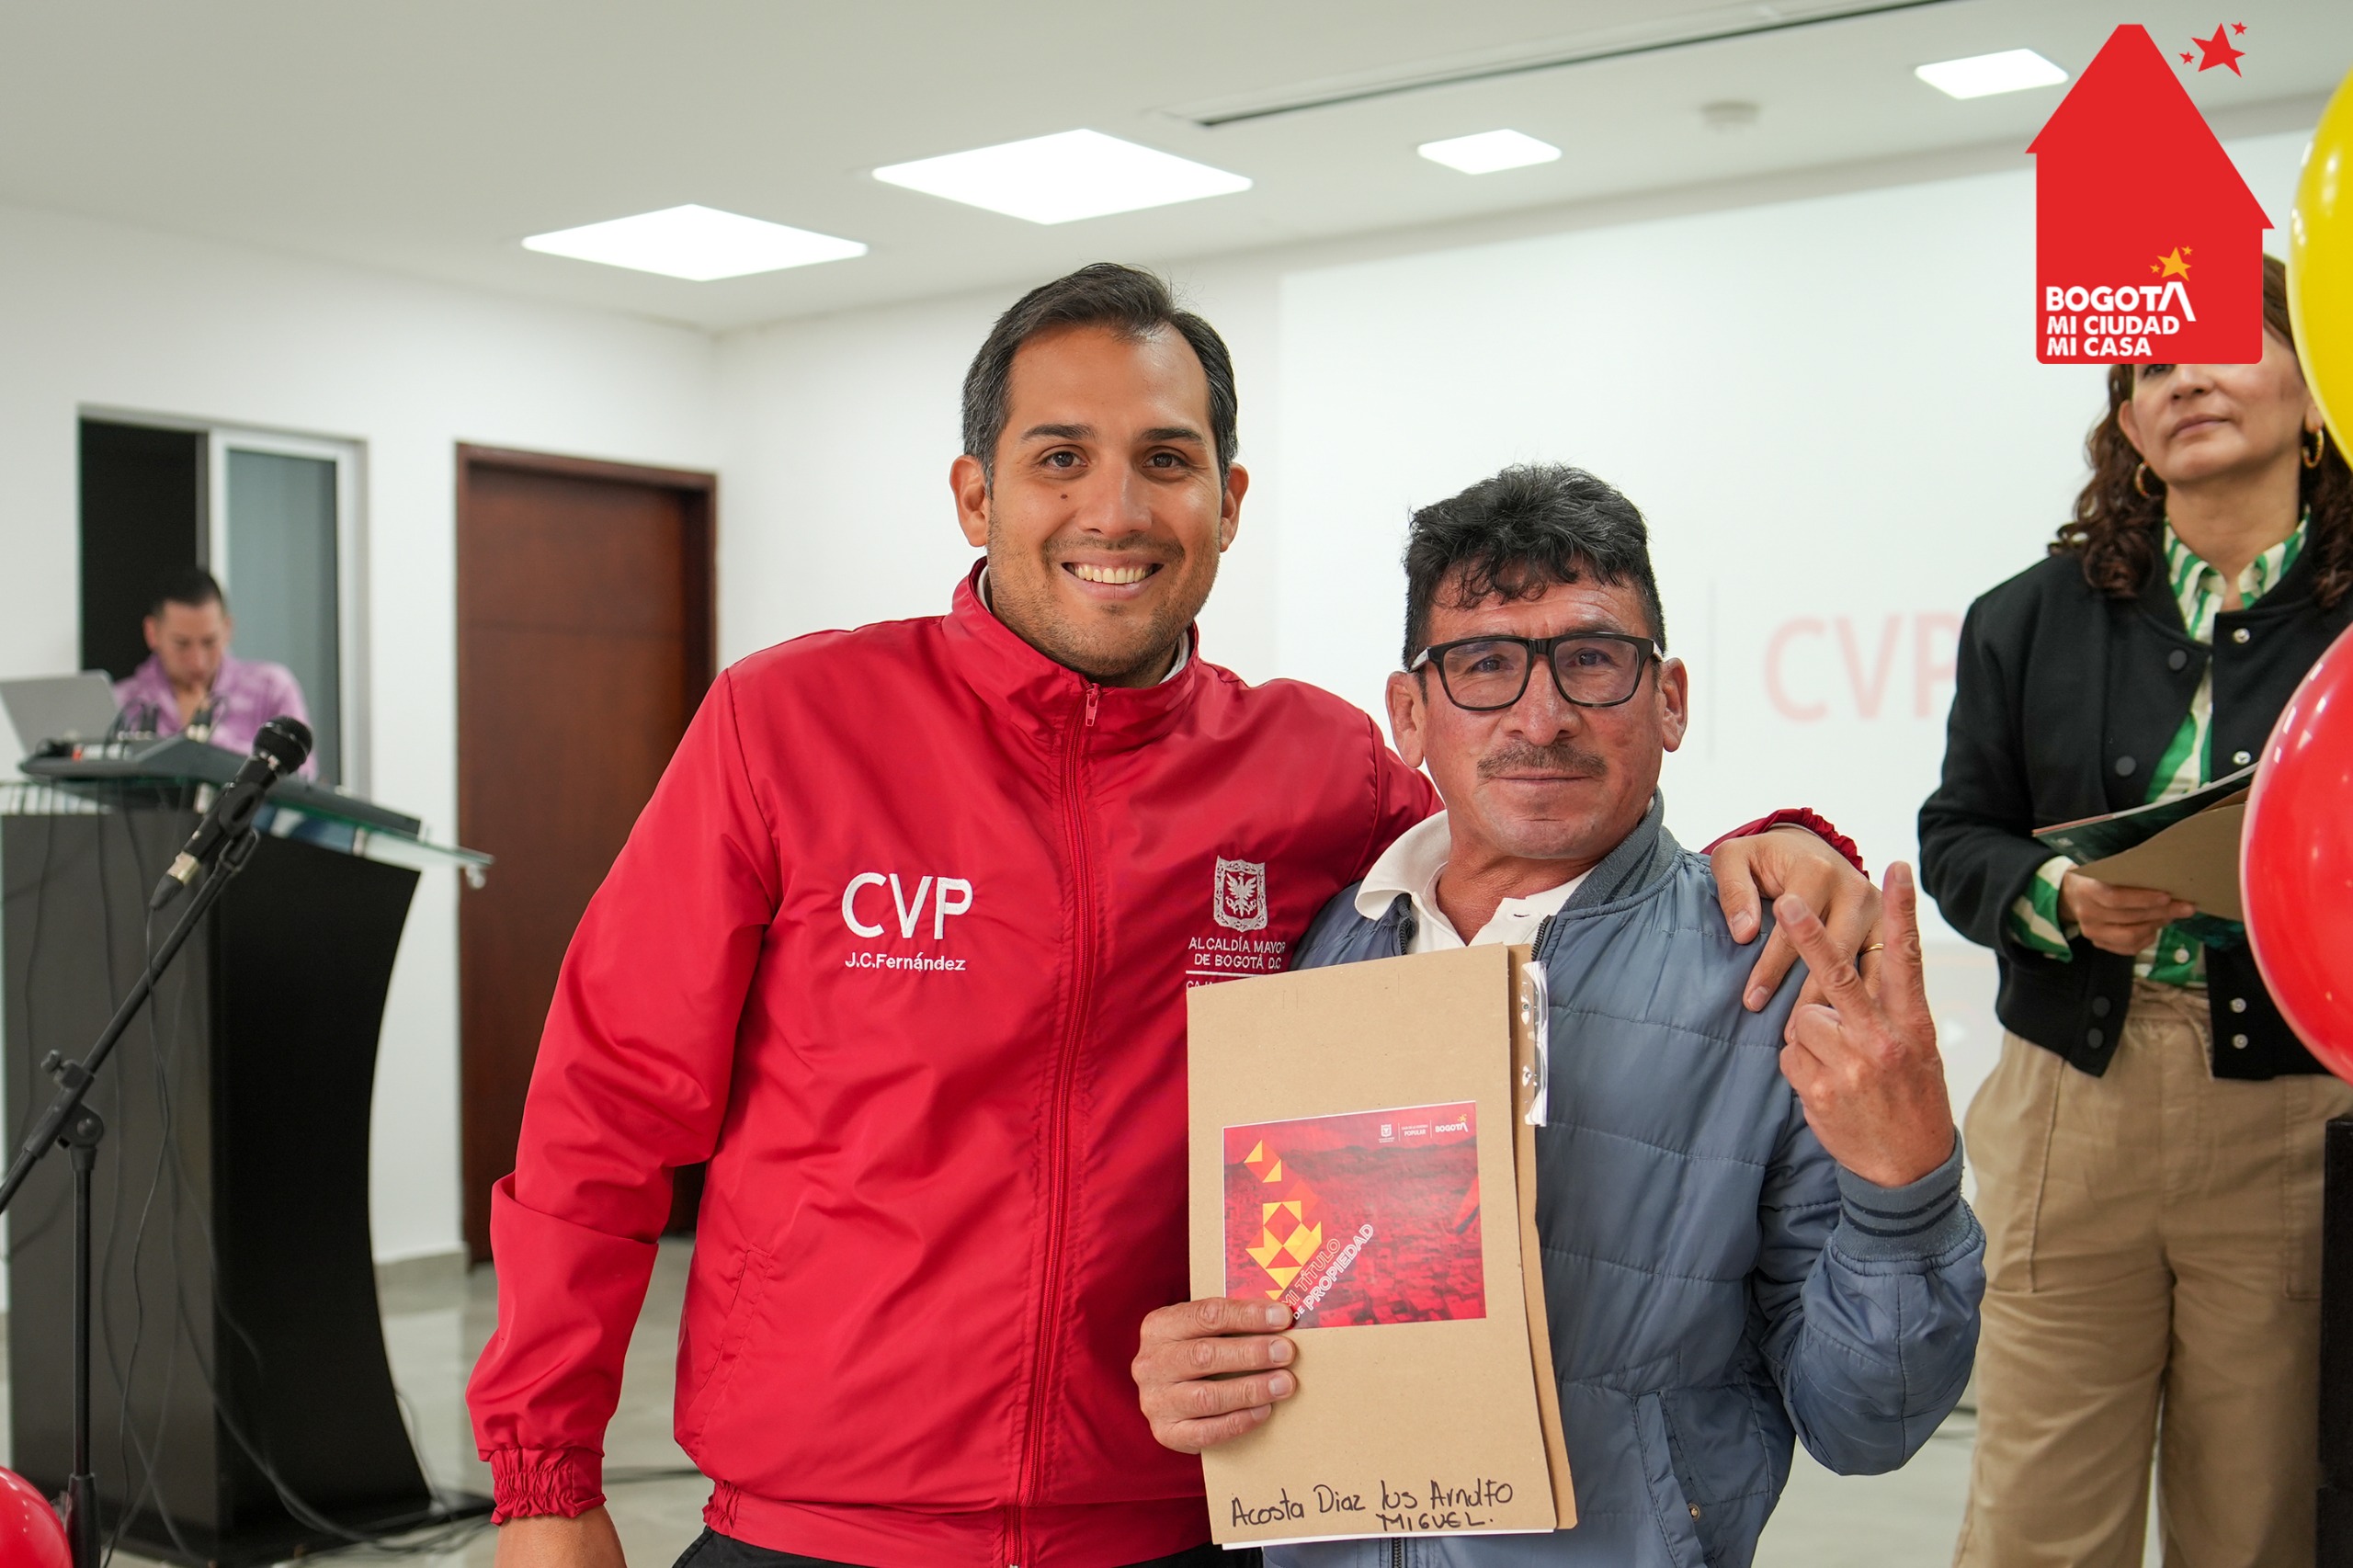  La Caja de la Vivienda Popular CVP otorgó beneficios financieros a 105 familias de Comuneros La Palma, Suba, mediante la cancelación de sus hipotecas y la entrega de sus paz y salvo.